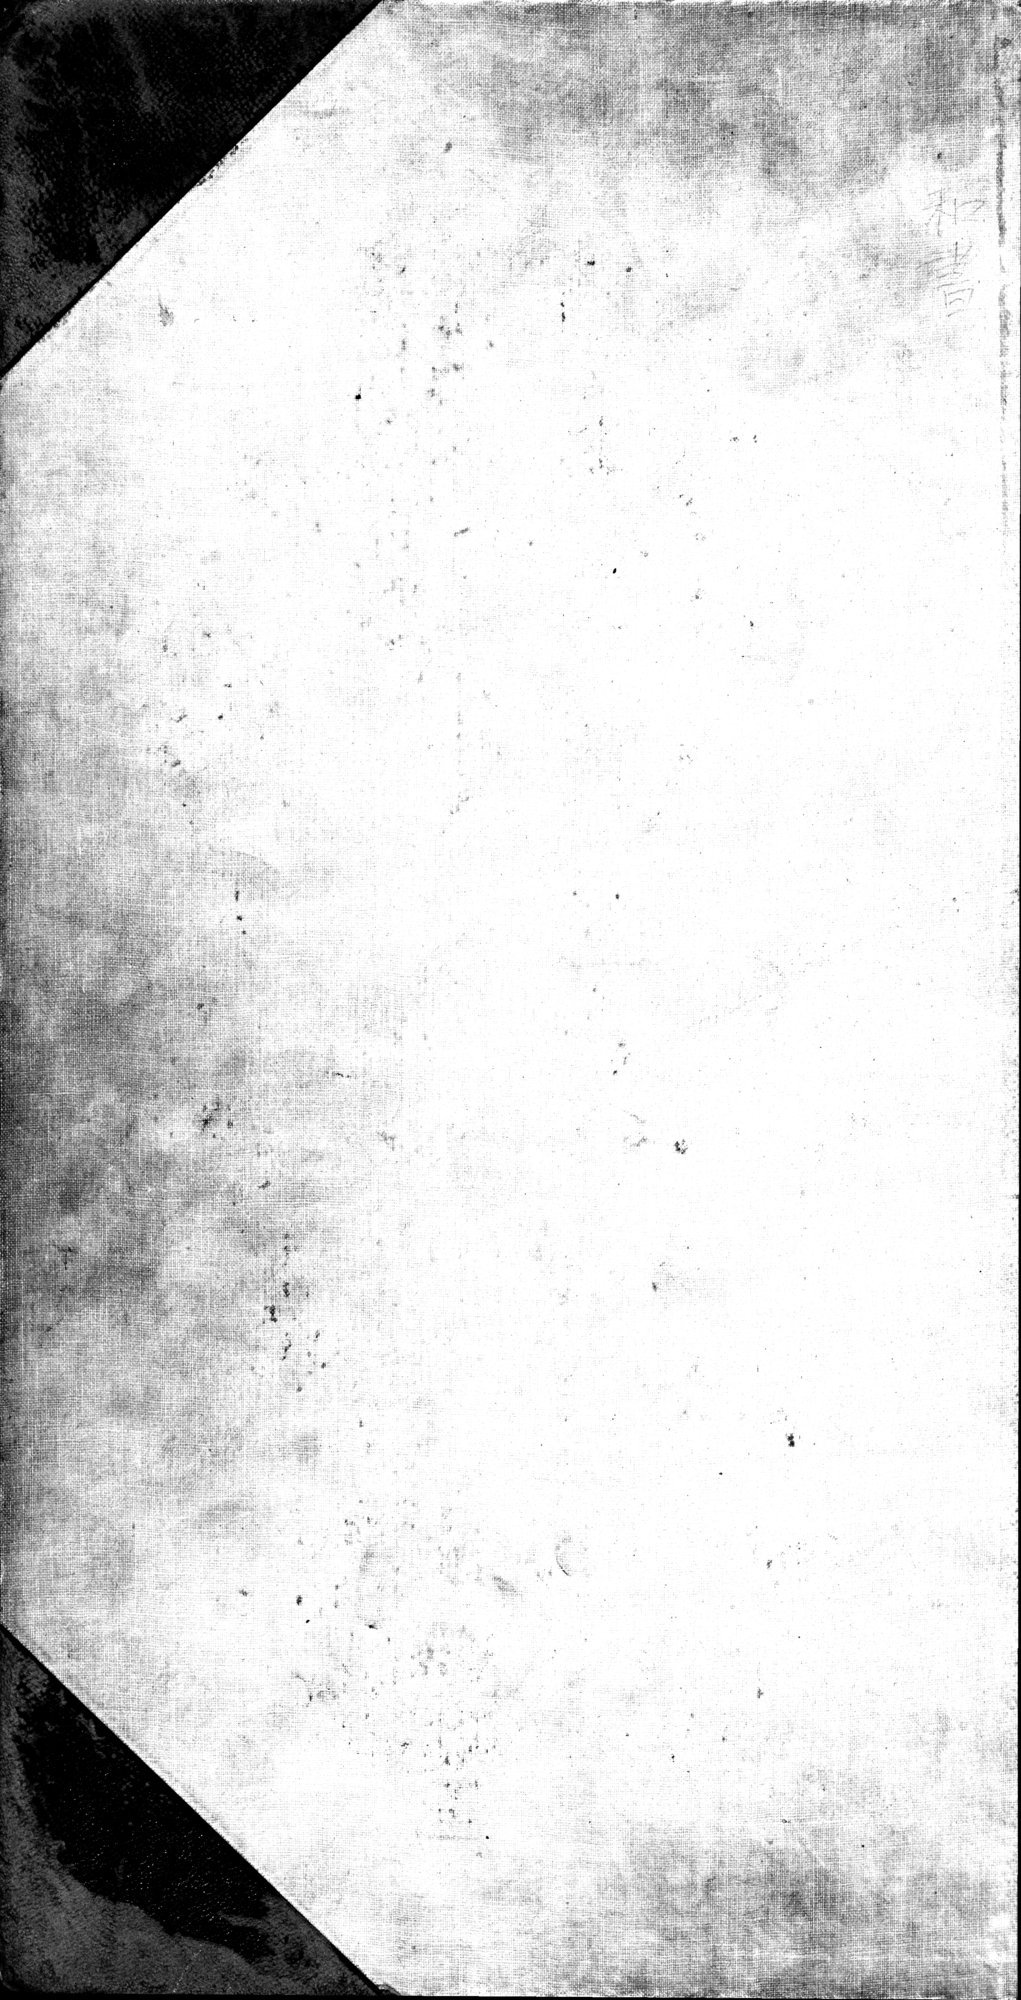 西域考古図譜 : vol.1 / Page 1 (Grayscale High Resolution Image)